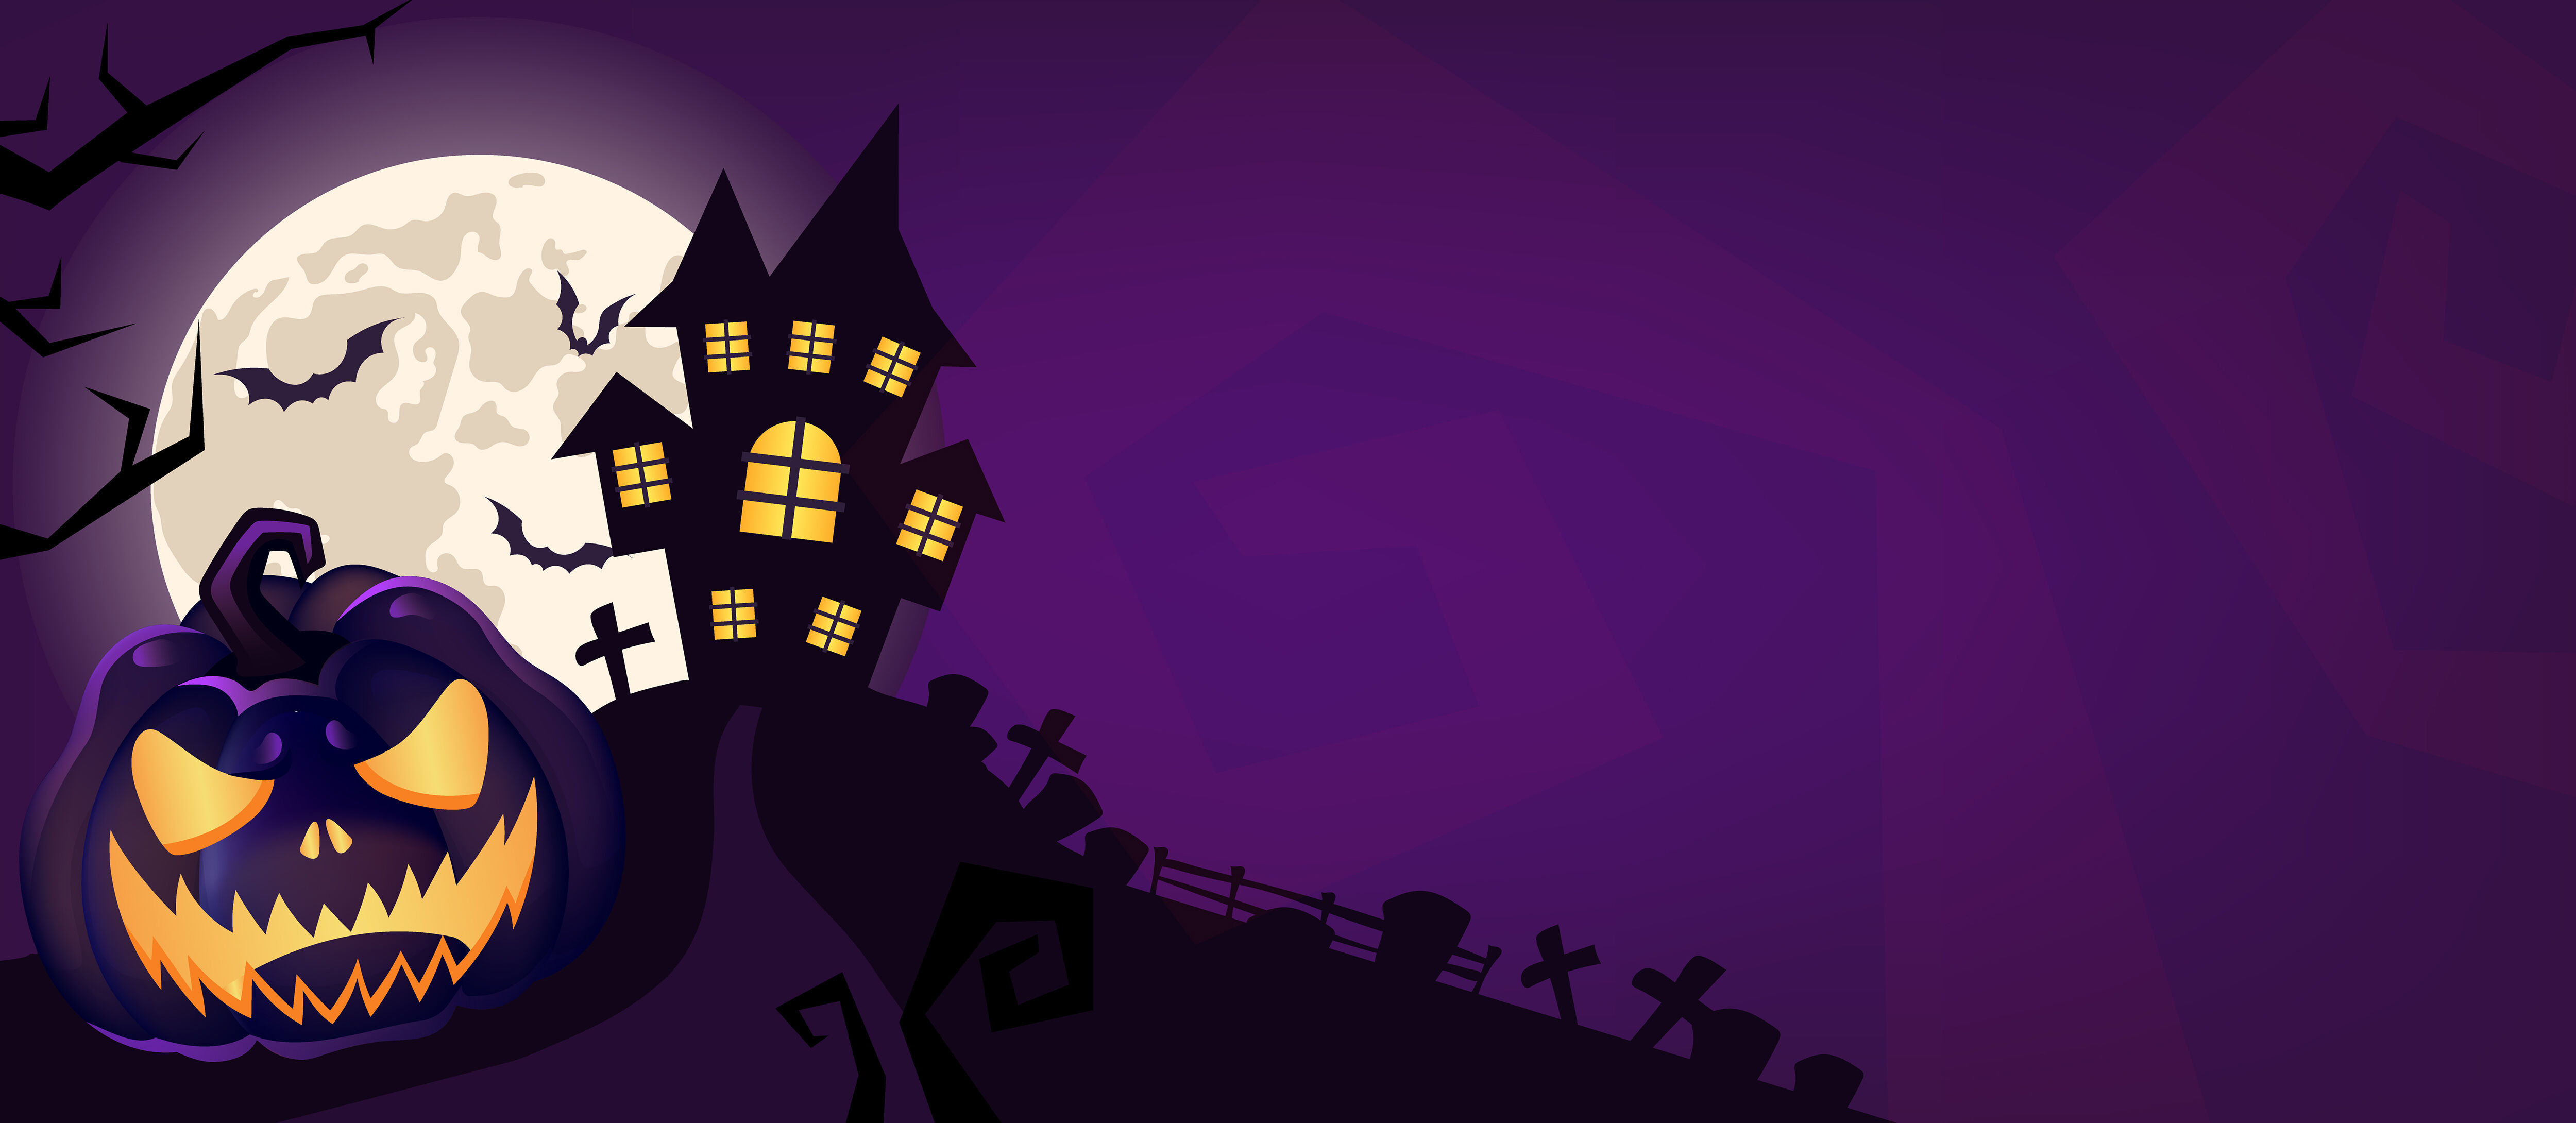 Nền tím đáng sợ Halloween vector: Halloween là cuộc chơi của những người dũng cảm, có sức mạnh và đầy liều lĩnh. Nền tím đáng sợ Halloween vector mang đến cho bạn cảm giác của những điều đó và độ rùng rợn, đem lại một trải nghiệm đích thực cho chiếc điện thoại của bạn.